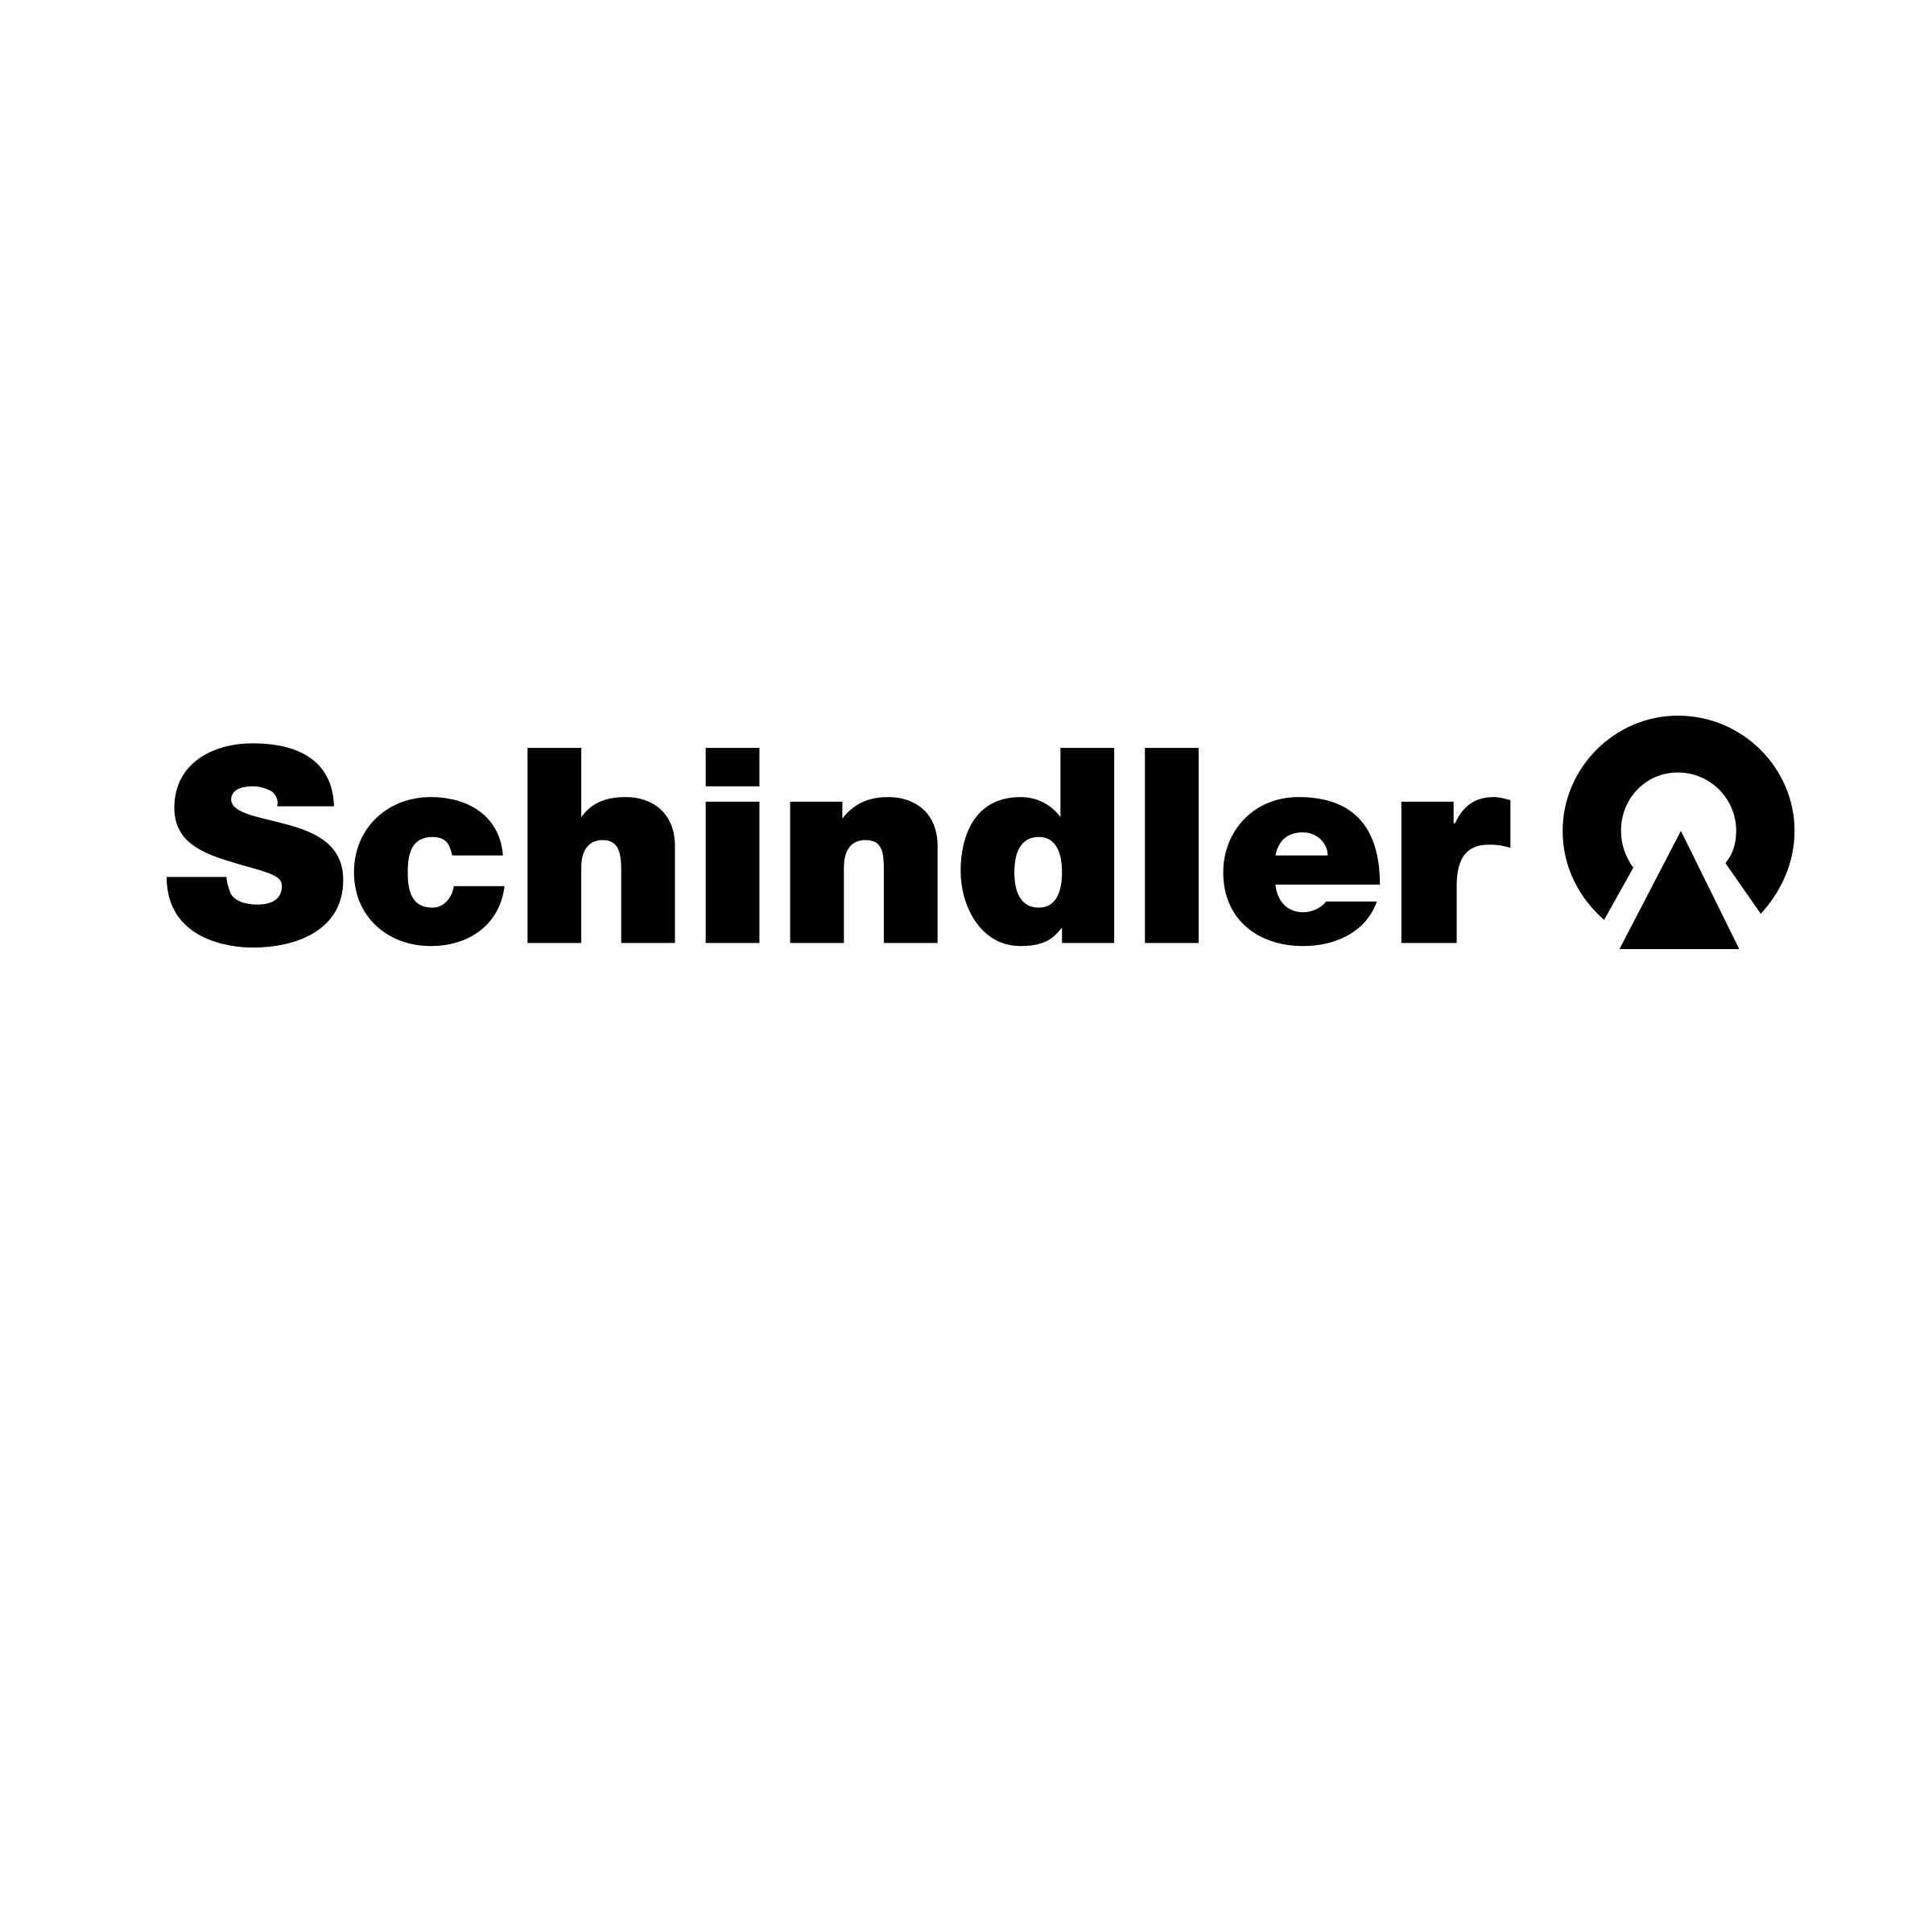 Schindler Logo - Schindler Logo PNG Transparent & SVG Vector